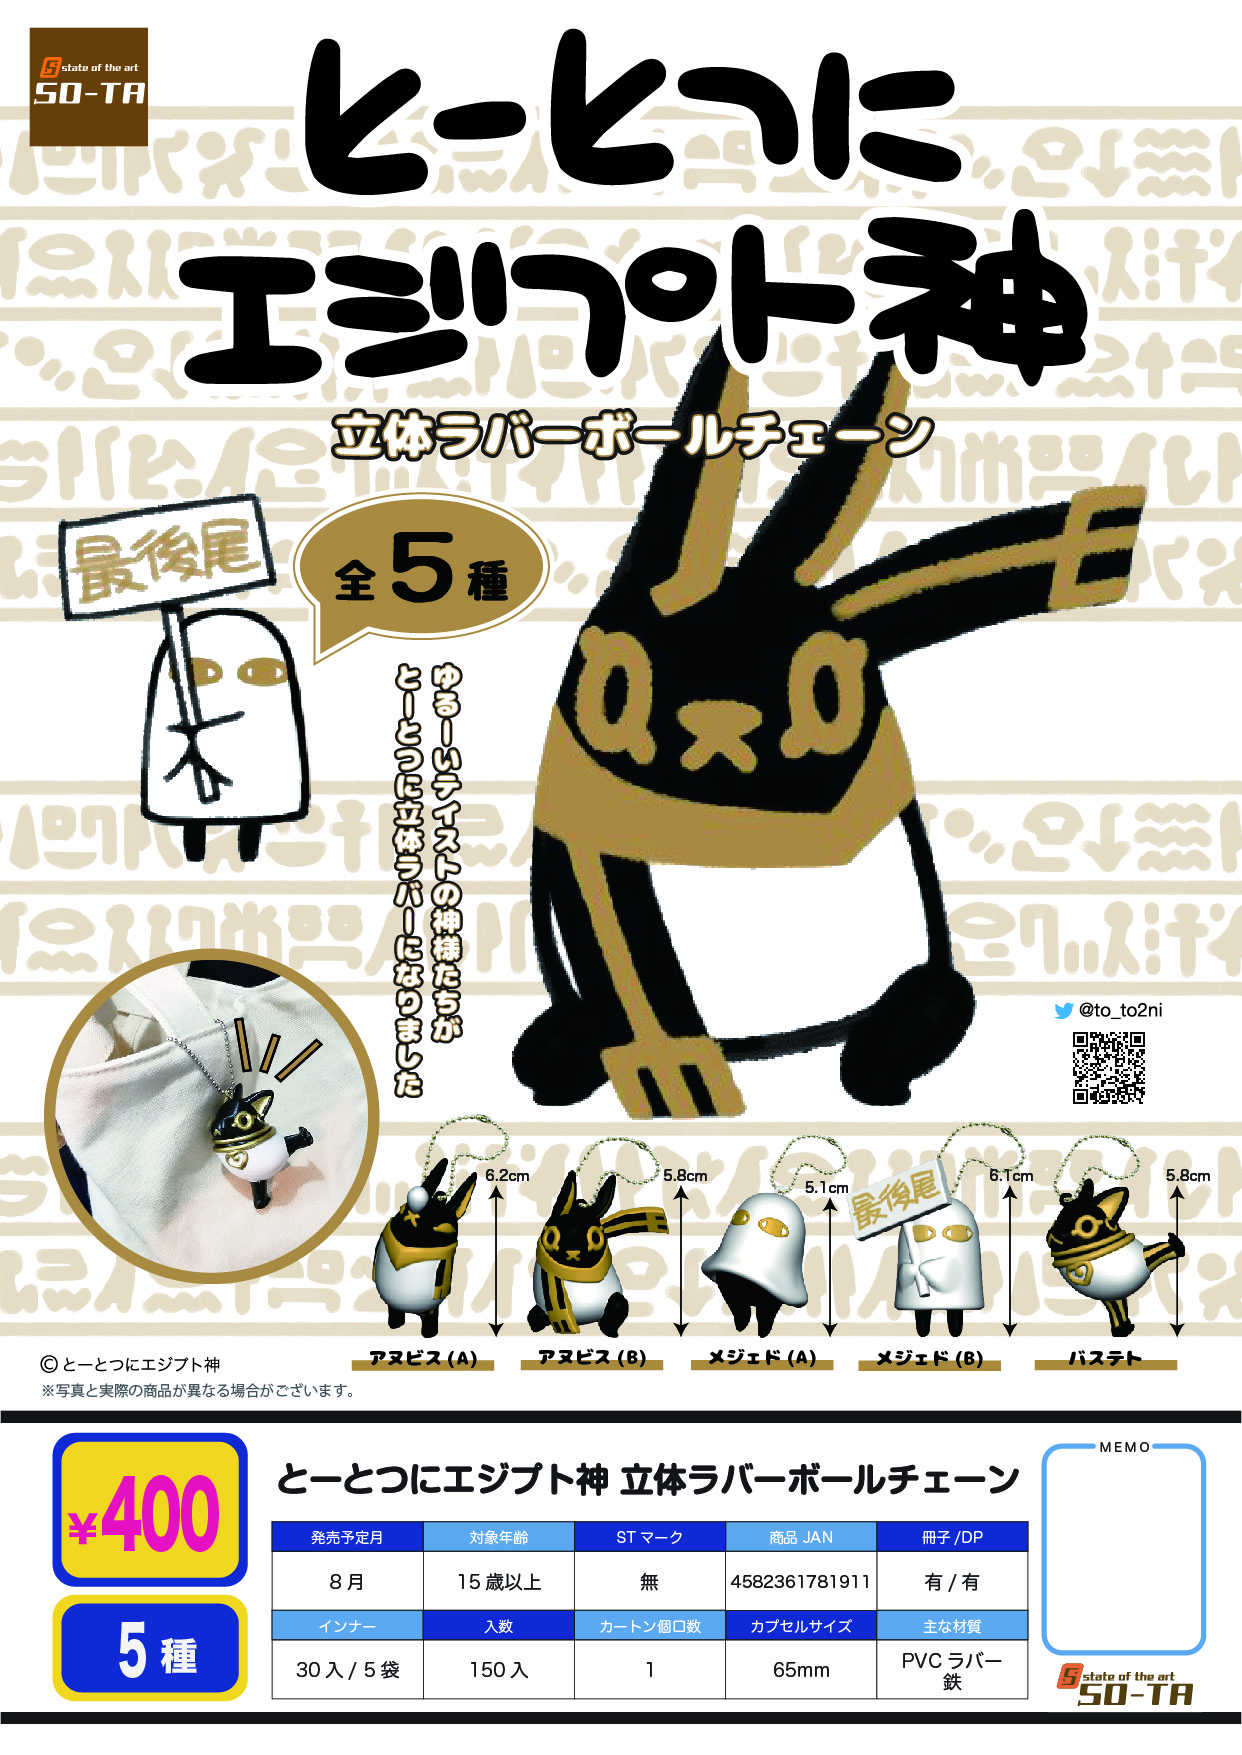 400日元扭蛋 埃及神 立体橡胶挂件 全5种 (1袋30个)  781911